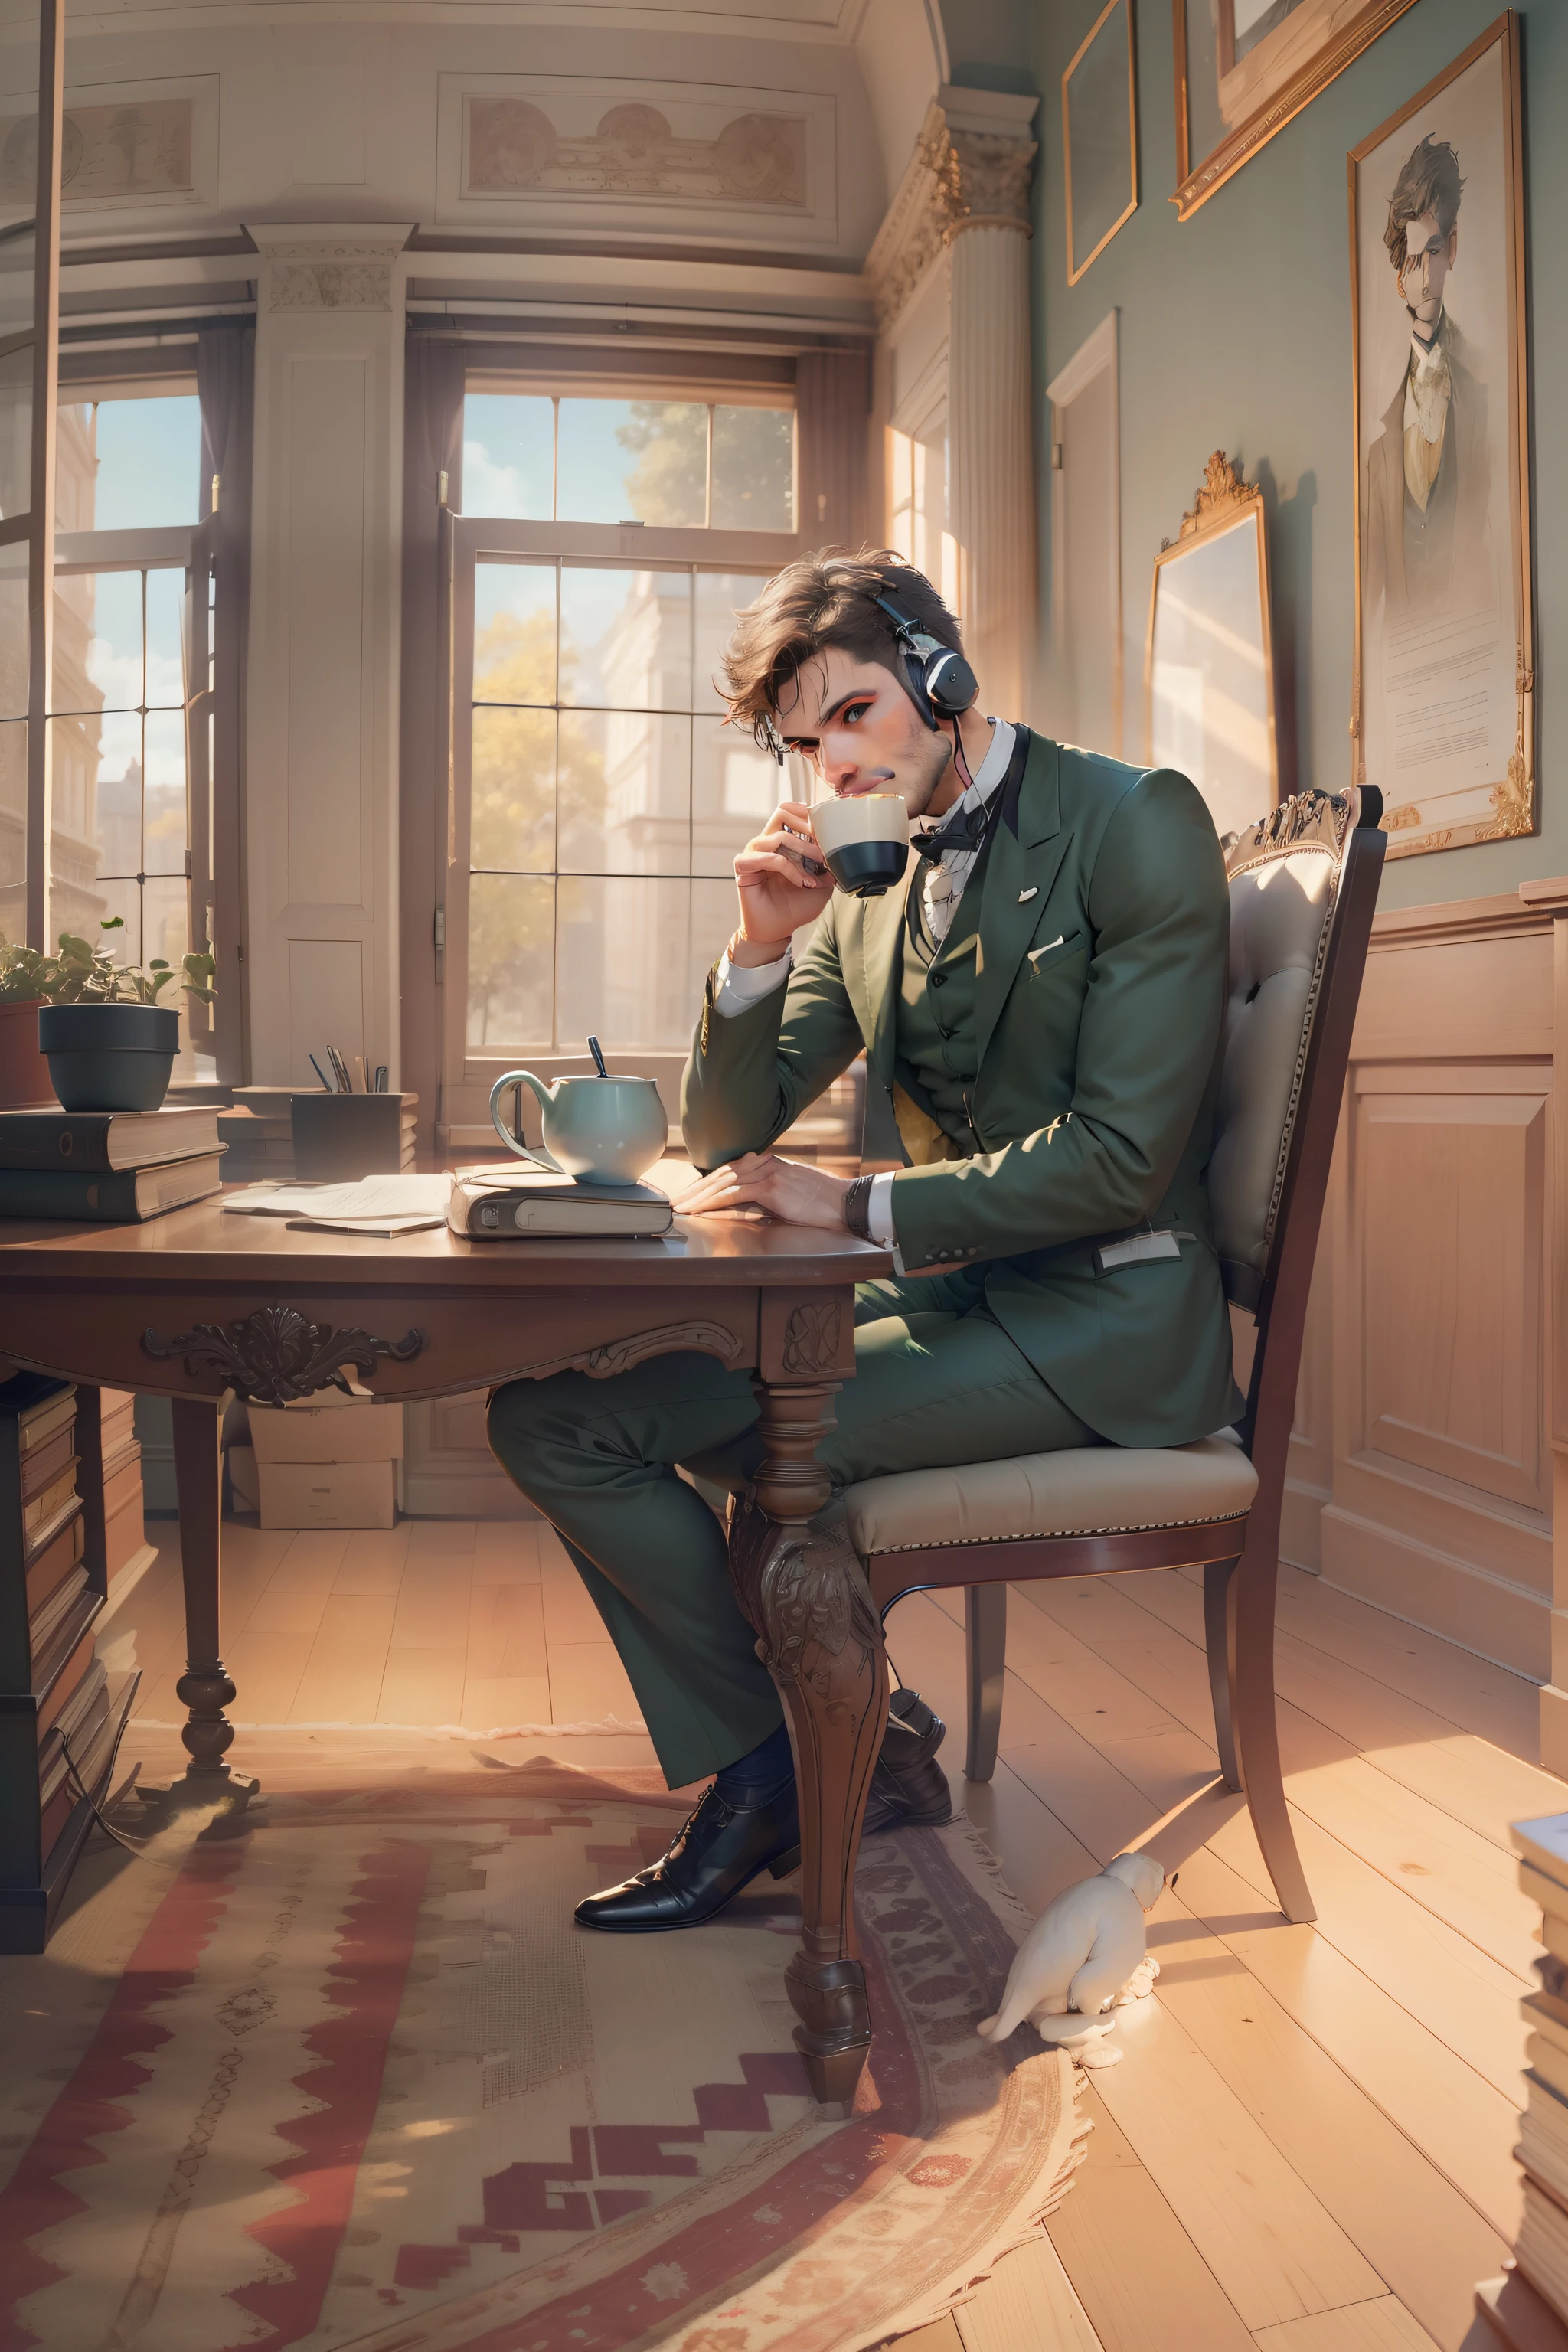 Um homem sentado atrás de uma mesa em uma sala de estudo do século 19, Olhos cinzento-esverdeados, cabelo curto, Desaparecer, Restolho de 3 dias, segurando uma xícara de chá, Fones de ouvido overear, vista panorâmica, luz quente, terno